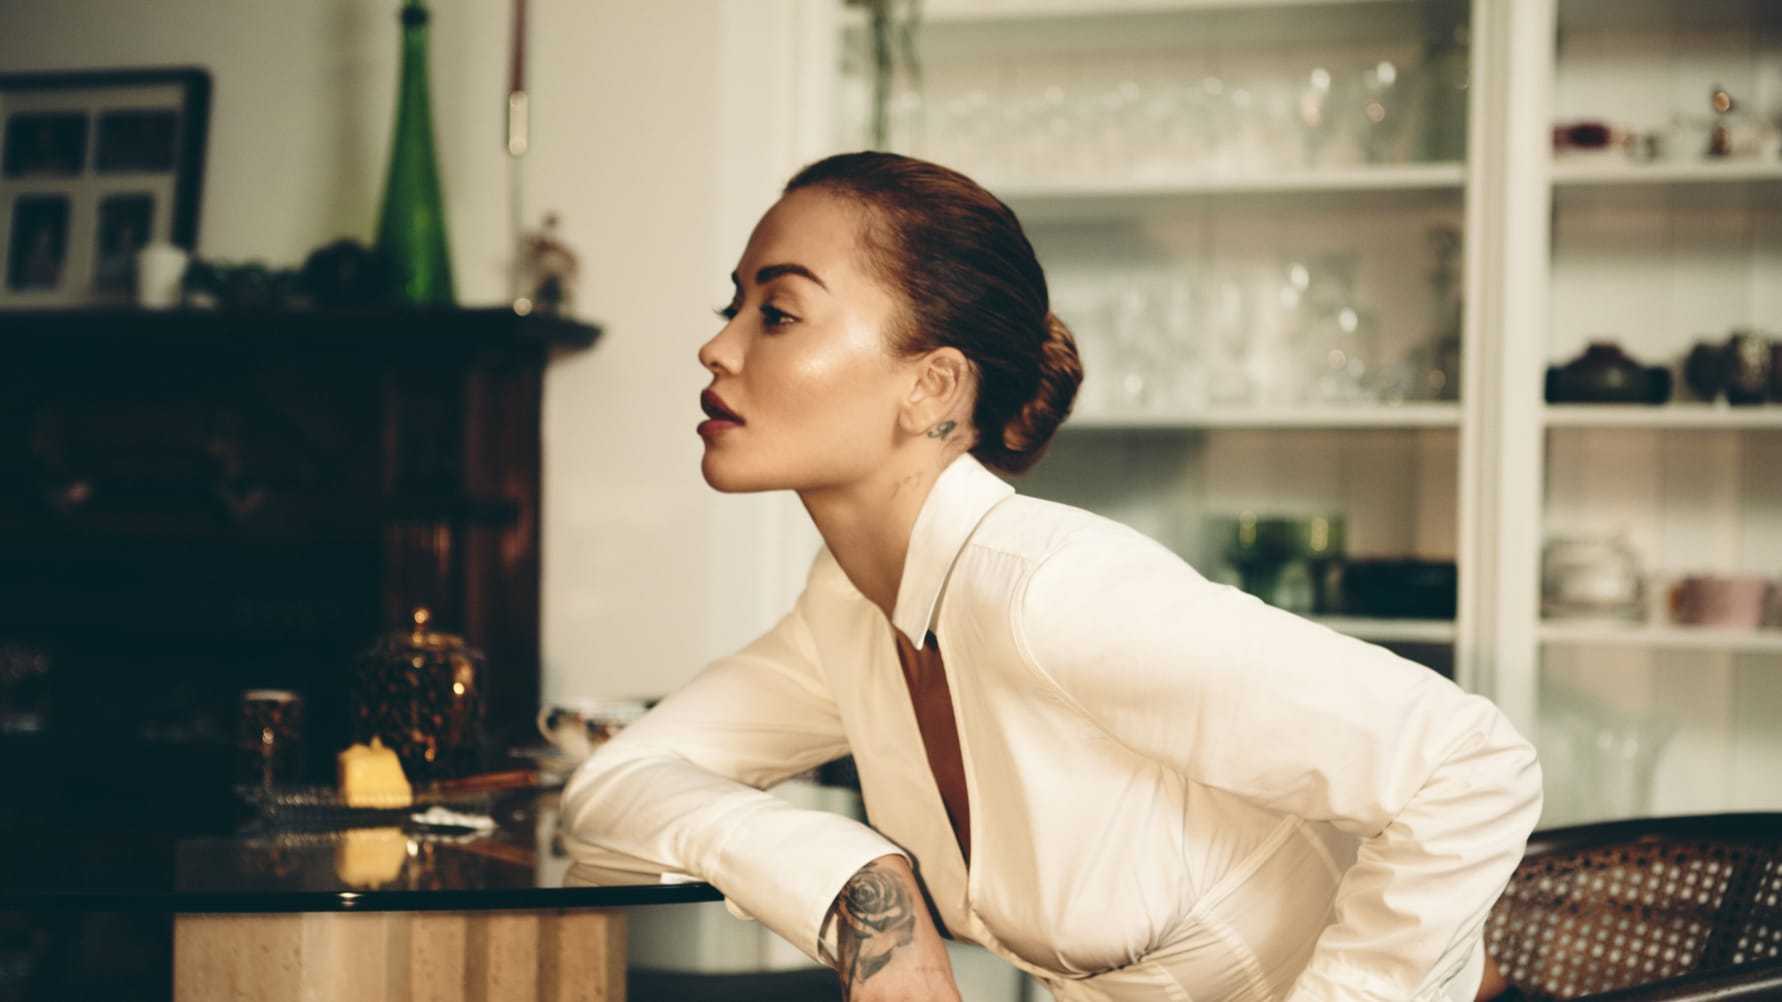 NYTT ALBUM. Rita Ora reflekterar över sitt liv på “You & I”  